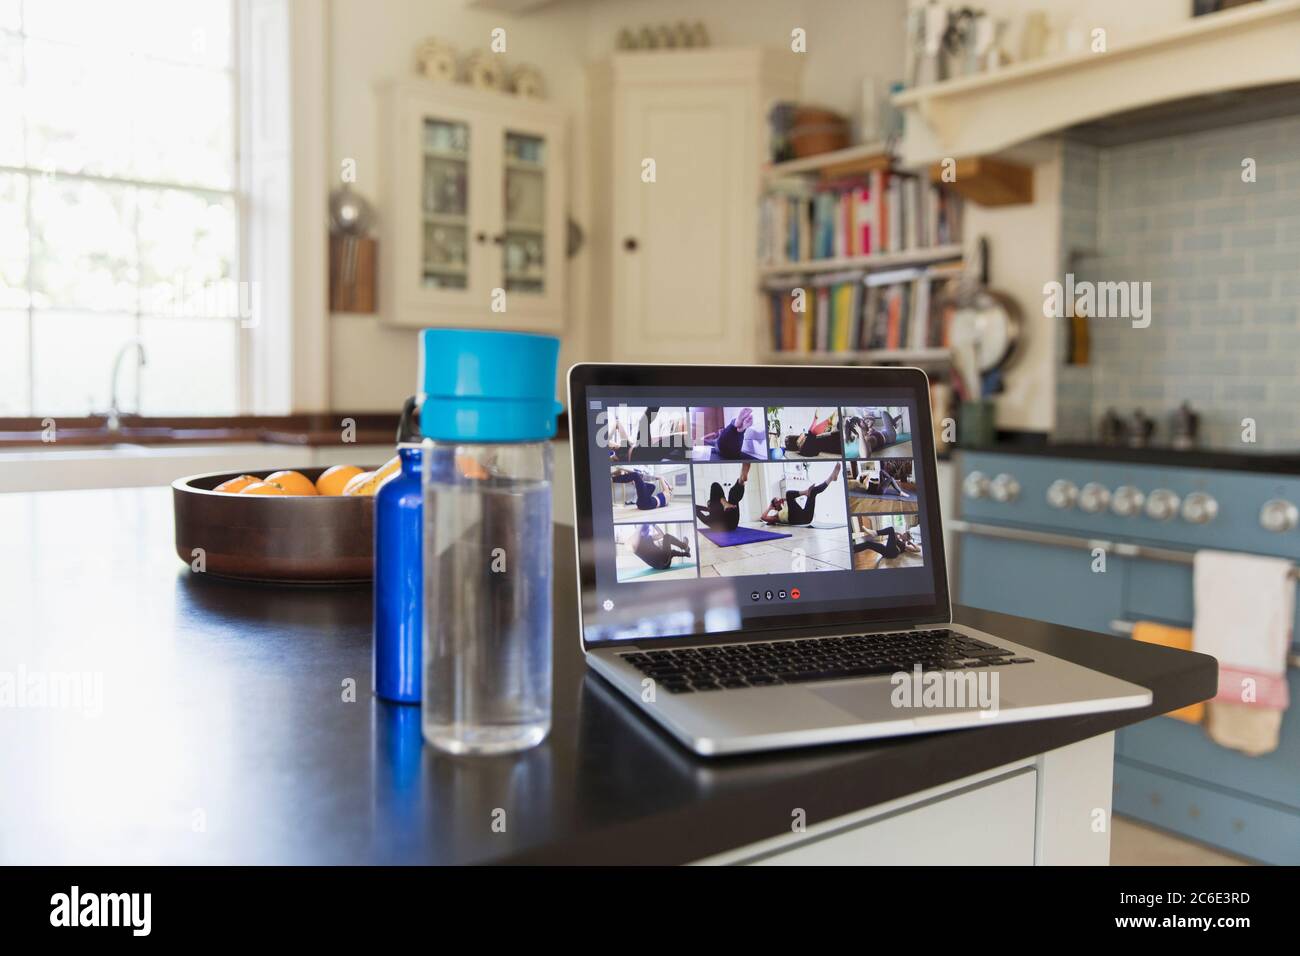 Esercitazione in streaming sullo schermo del computer portatile sul banco della cucina Foto Stock